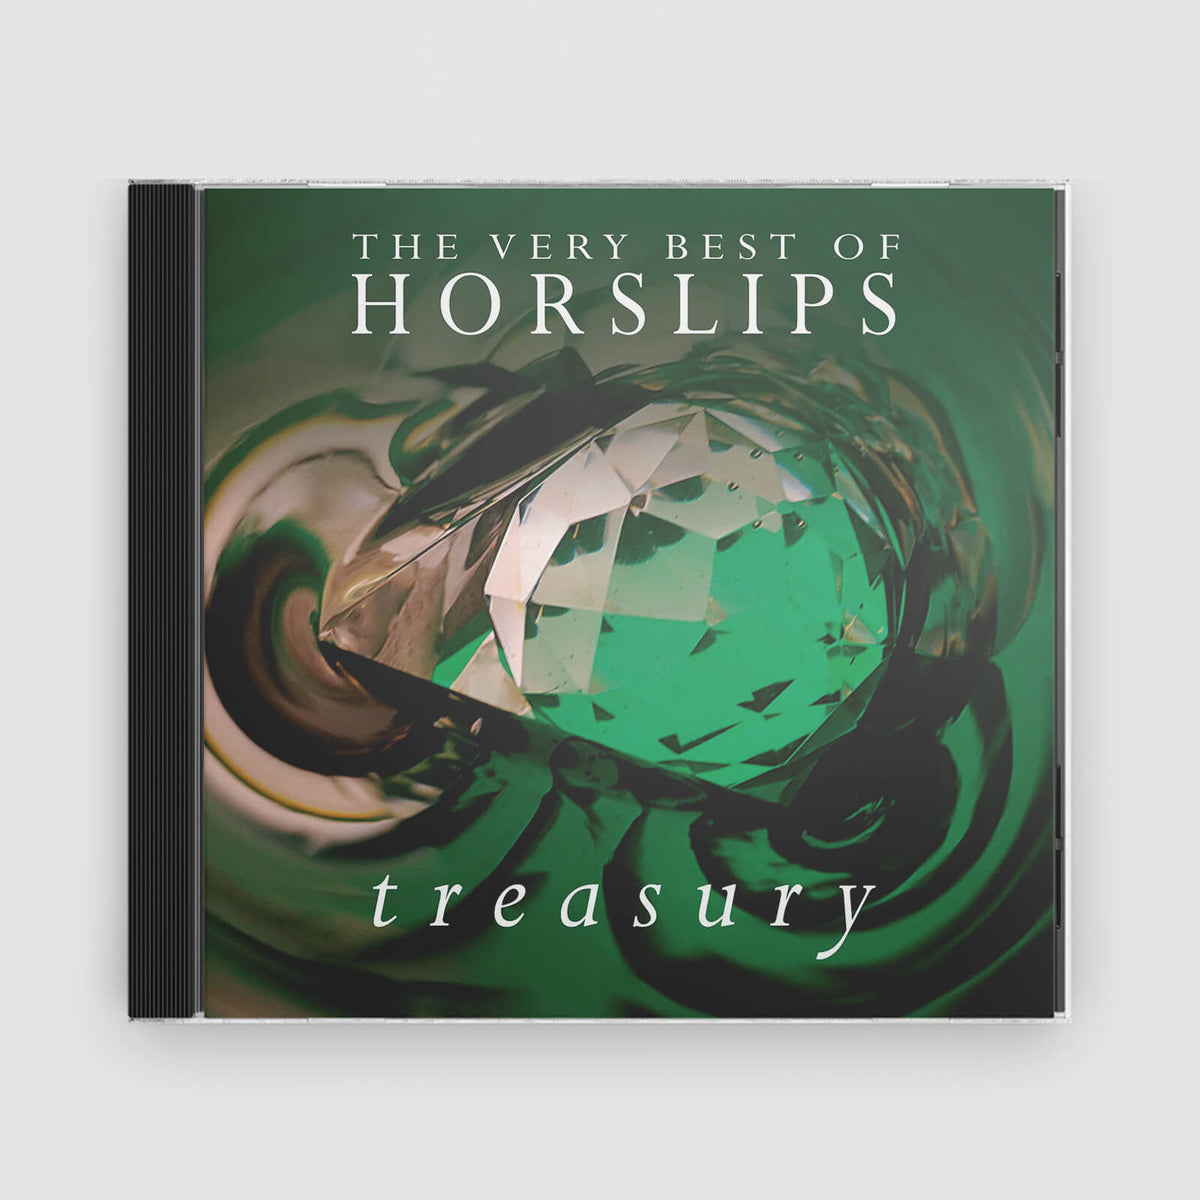 Horslips : Treasury - The Very Best of Horslips (2CD)